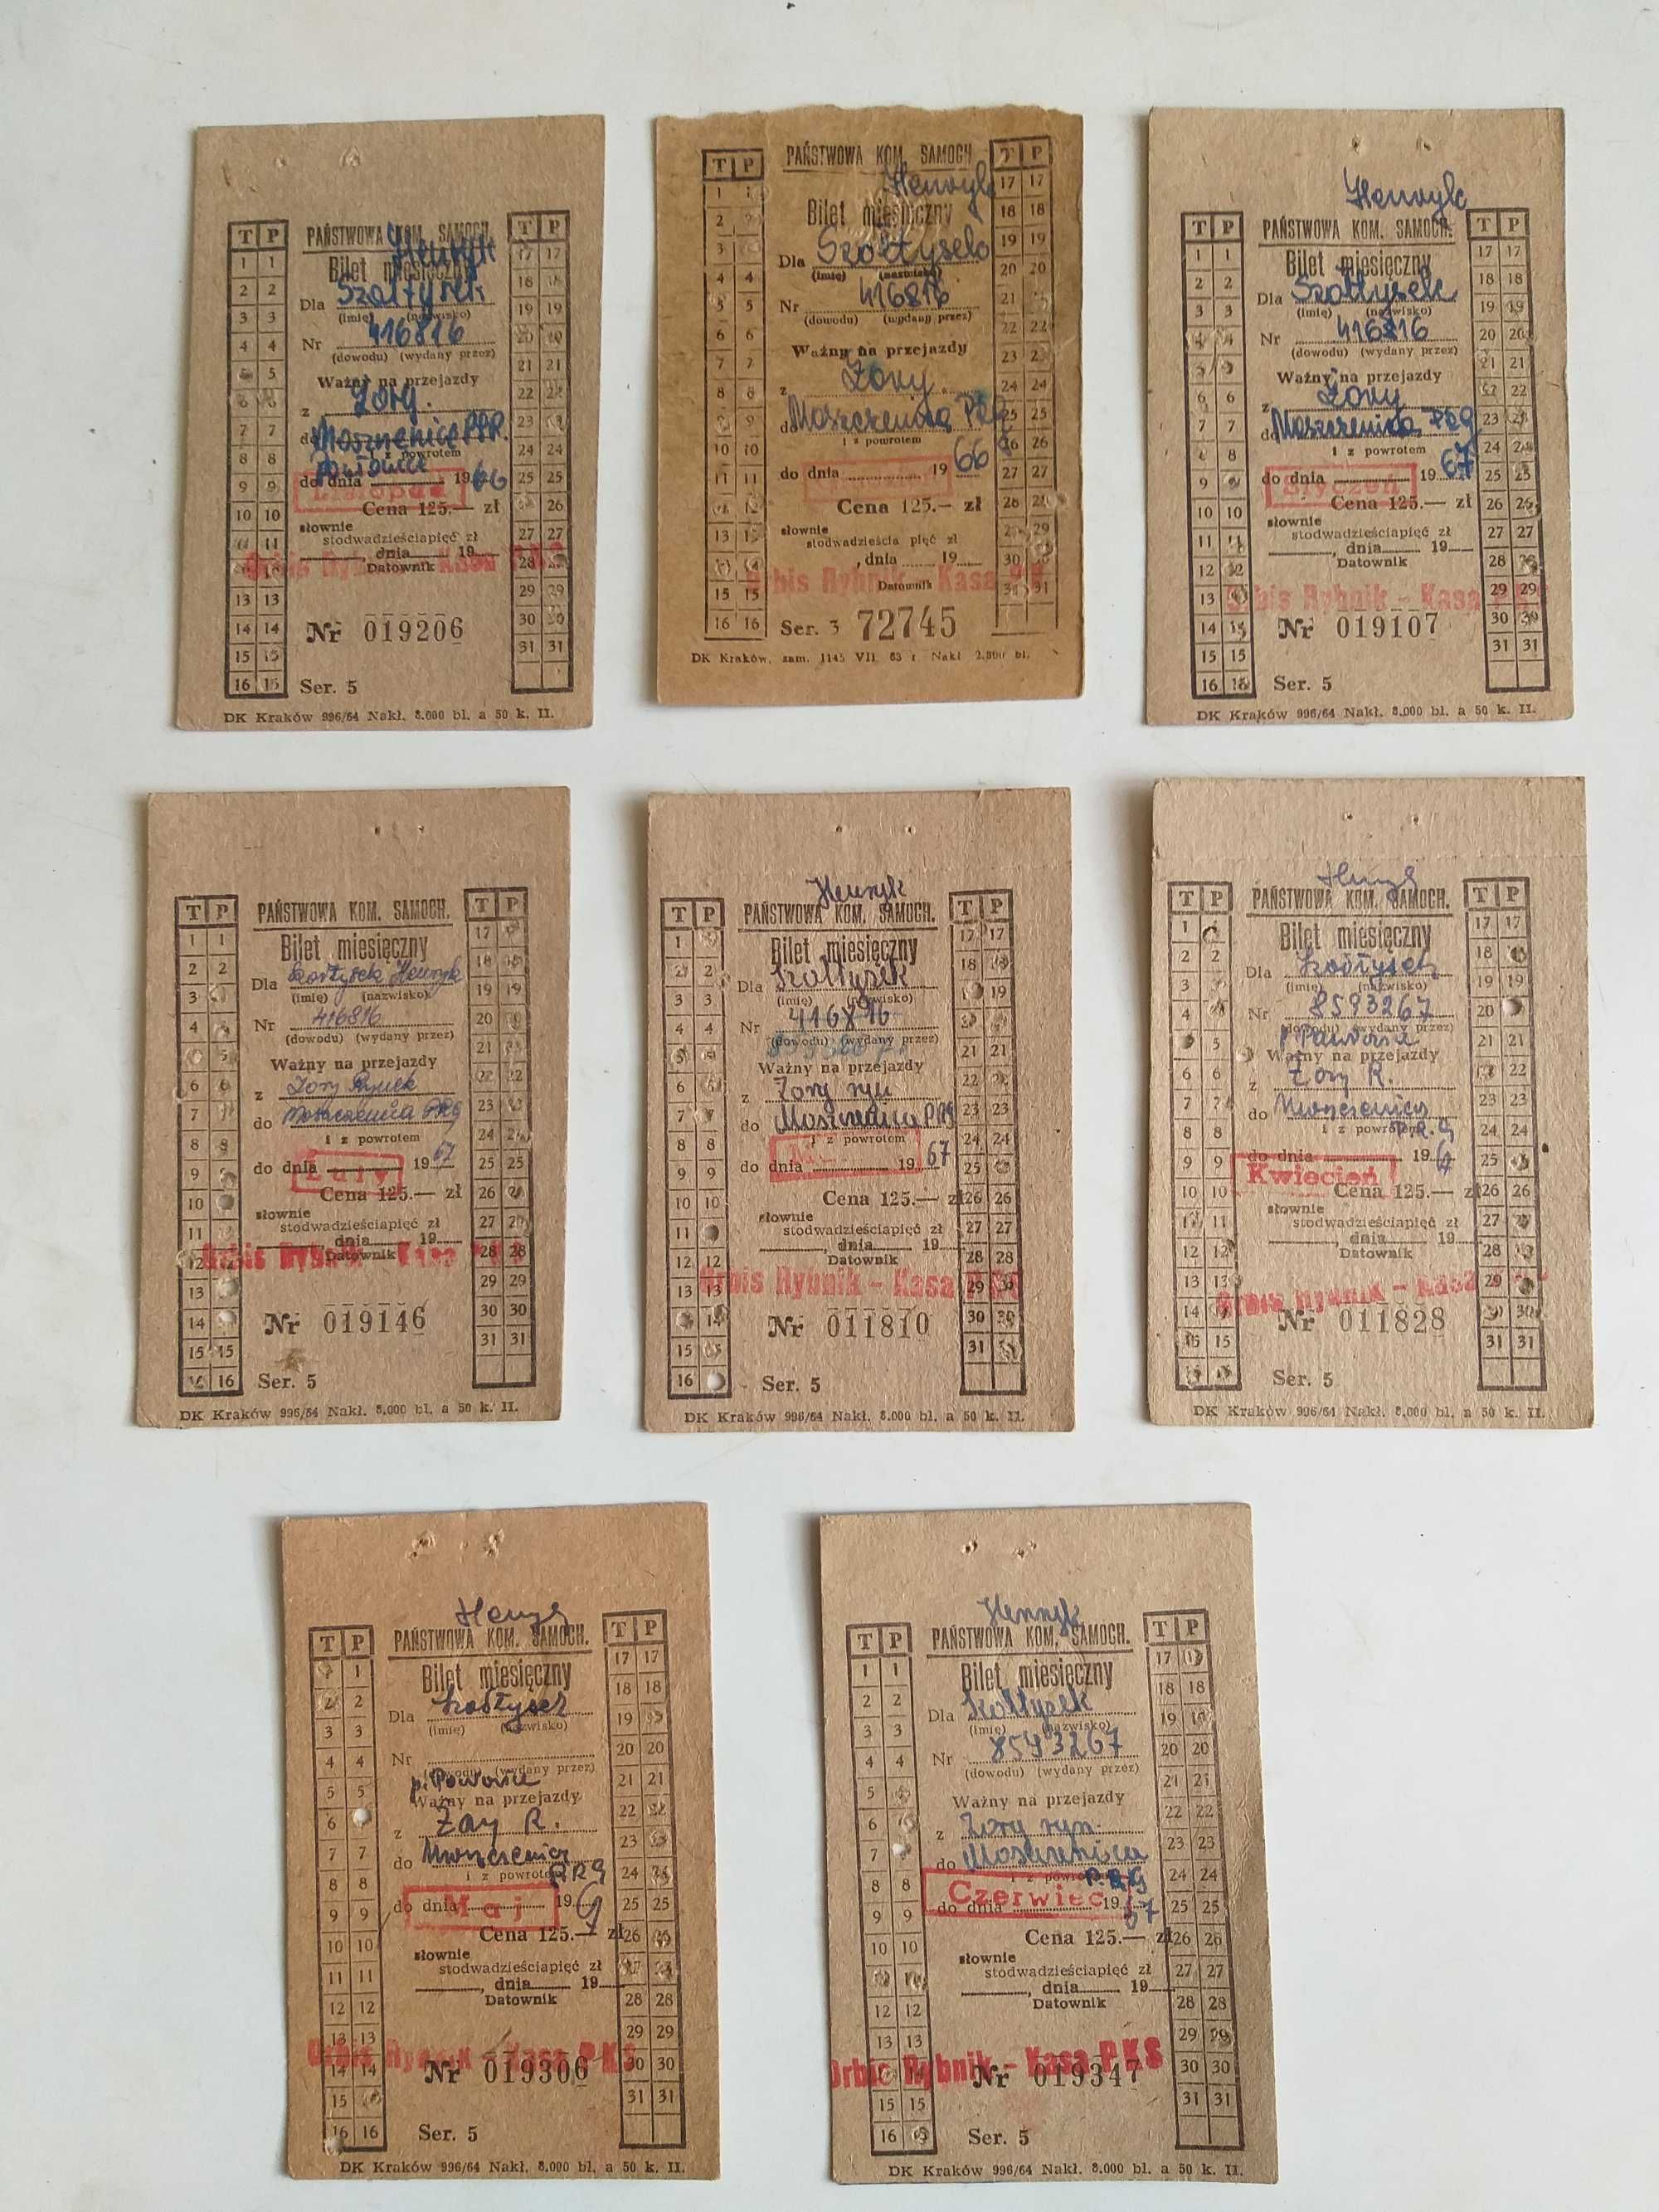 Bilety miesięczne PKS 1966-67 r. Żory-Moszczenica 9 sztuk